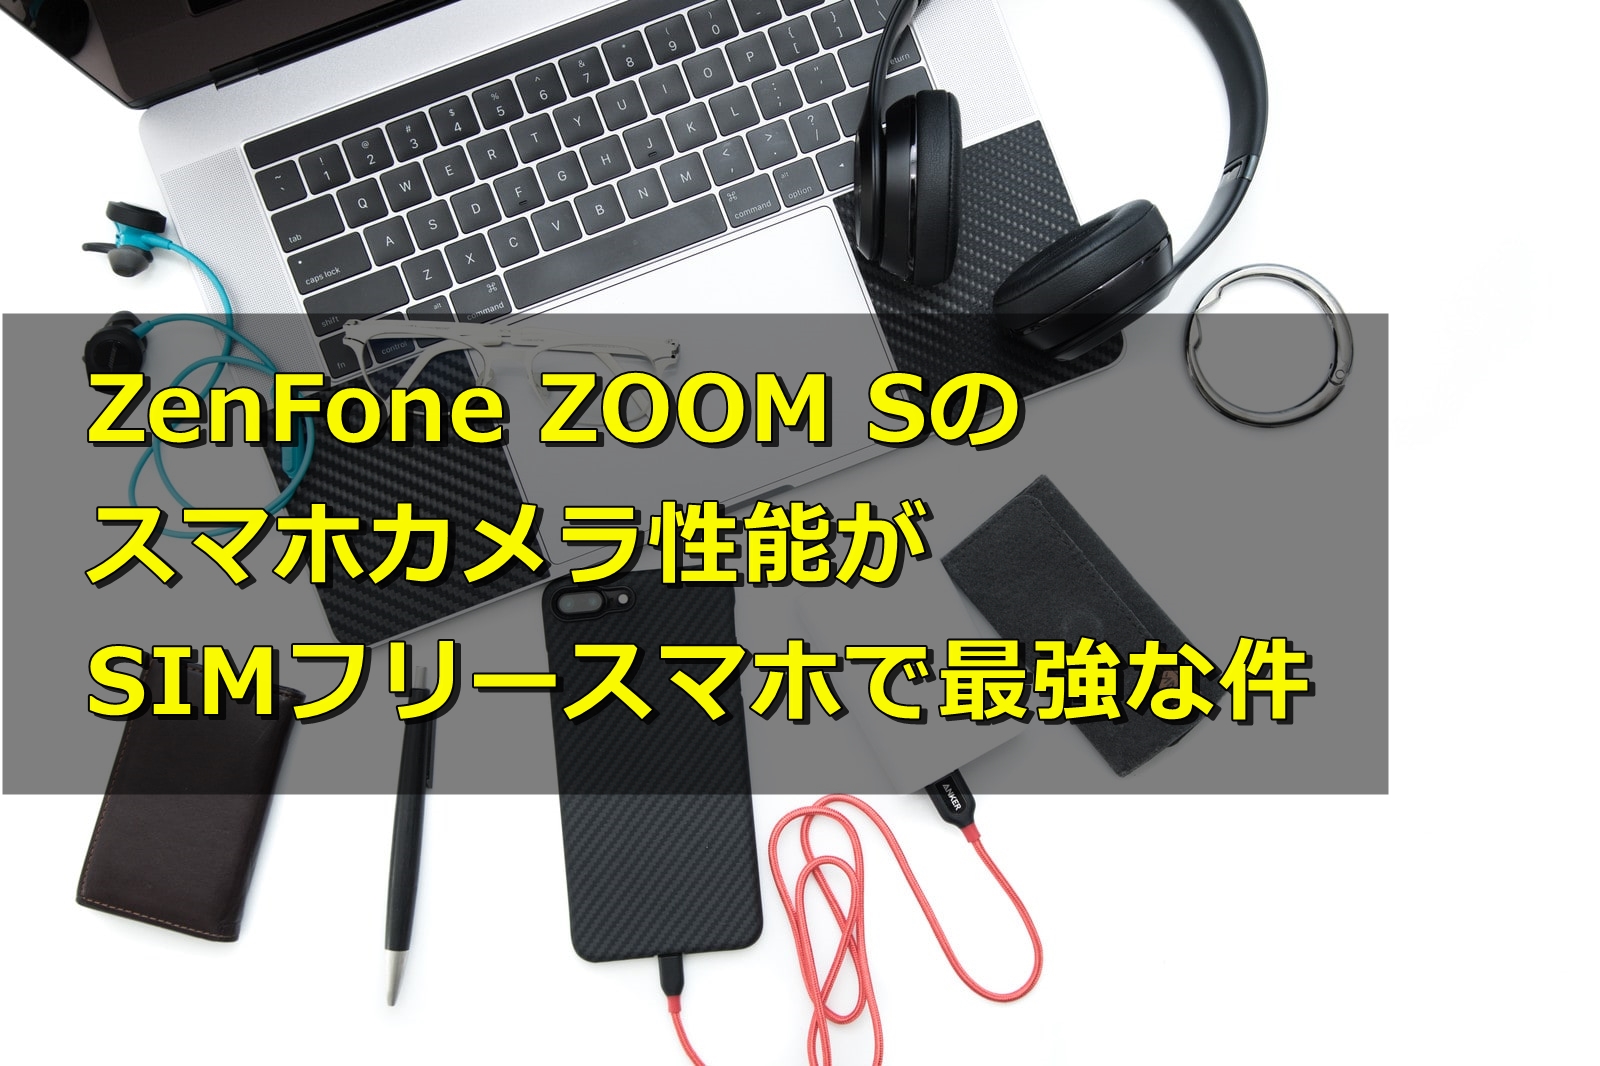 ZenFone ZOOM Sのスマホカメラ性能がSIMフリースマホで最強な件